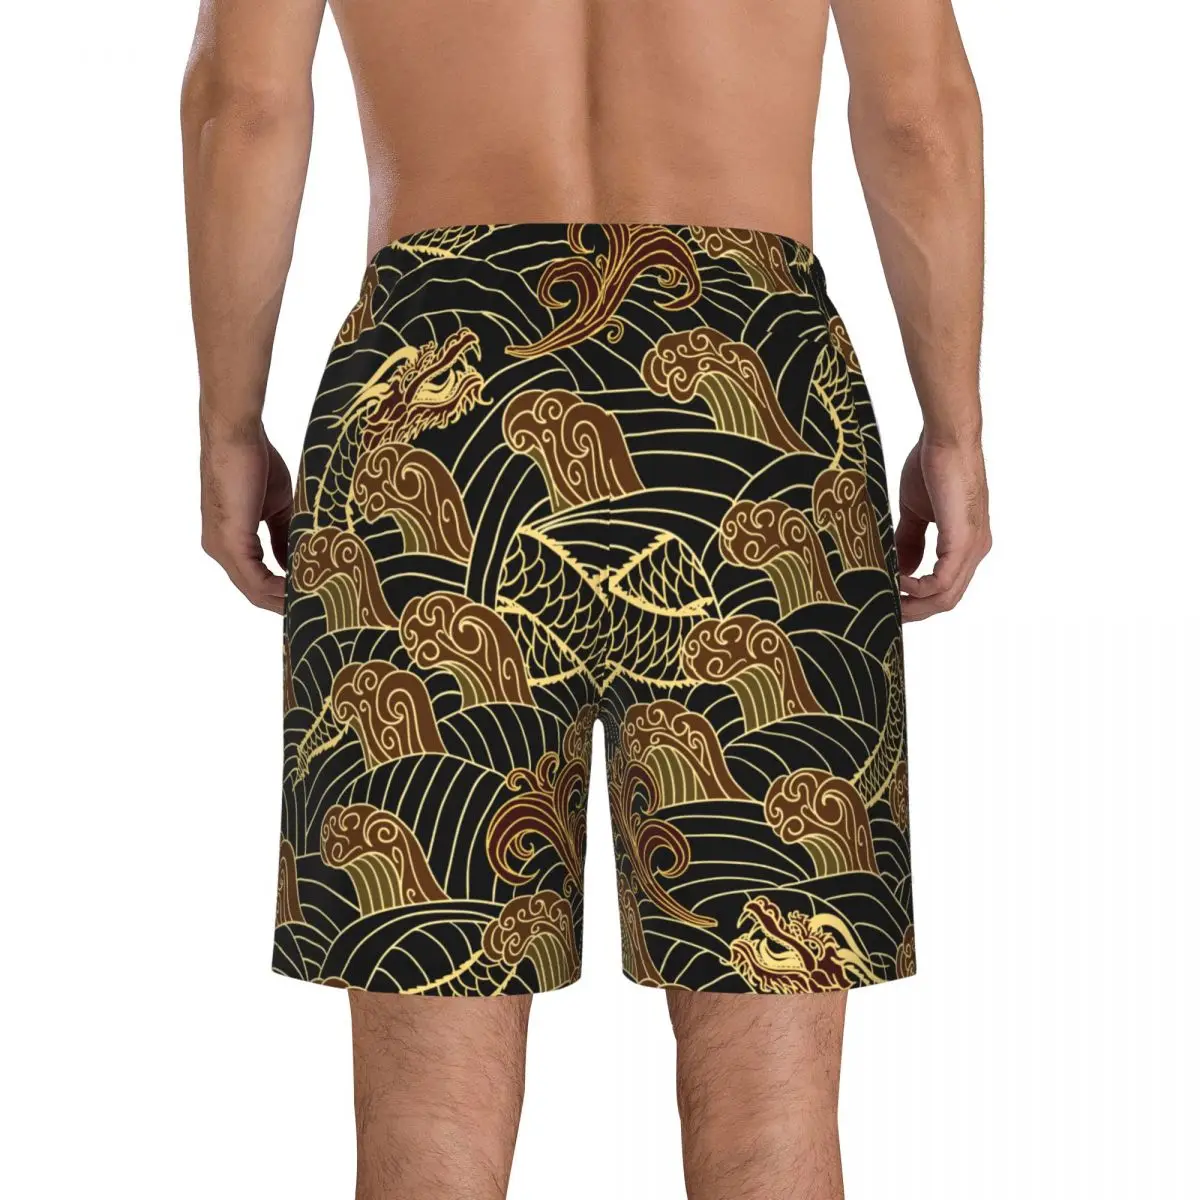 Летние мужские купальники Шорты Традиционная пляжная одежда Dragon Плавки Мужской купальник Изображение 3